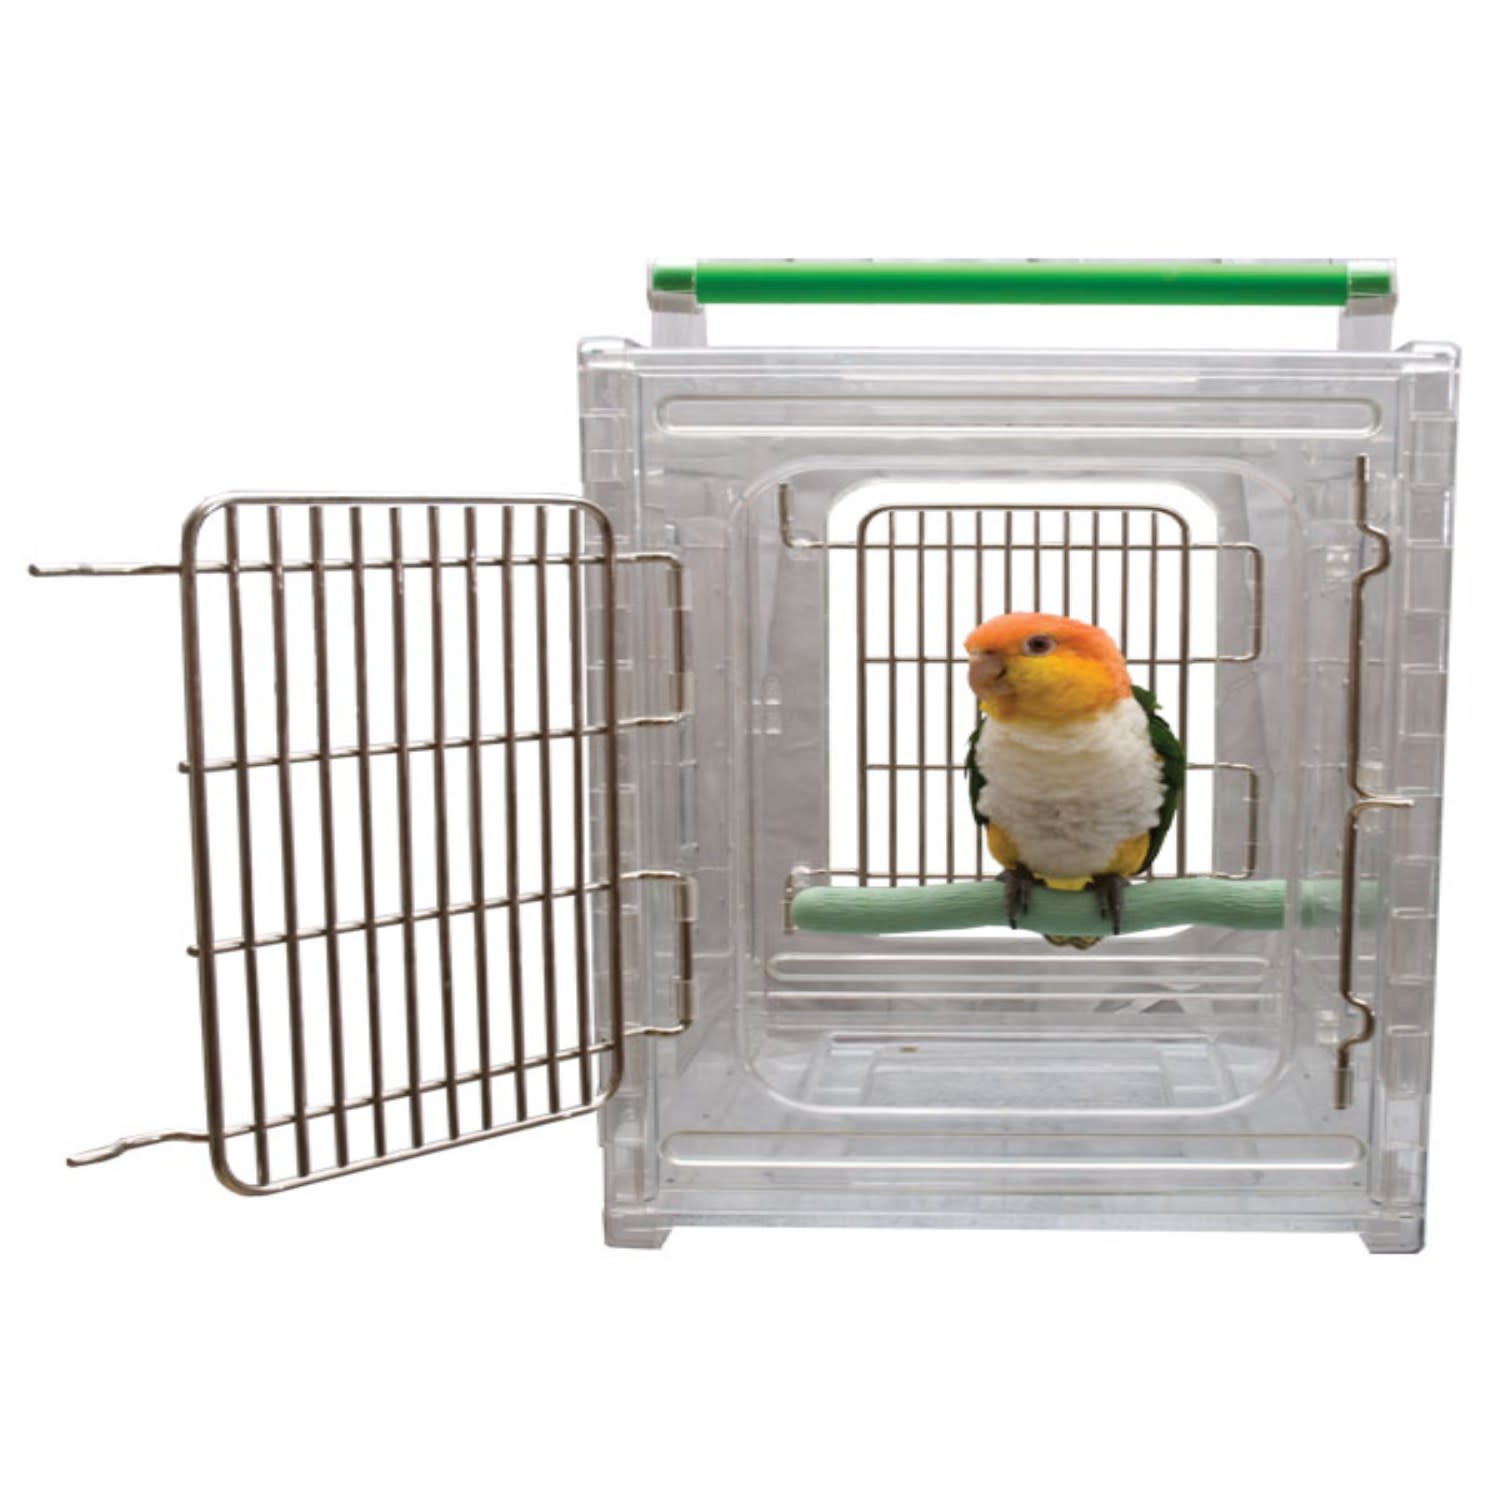 0円 アウトレットセール 特集 2 Color Size: Metal Foldable Bird Parrot Travel Vet Cage with Wooden Perc